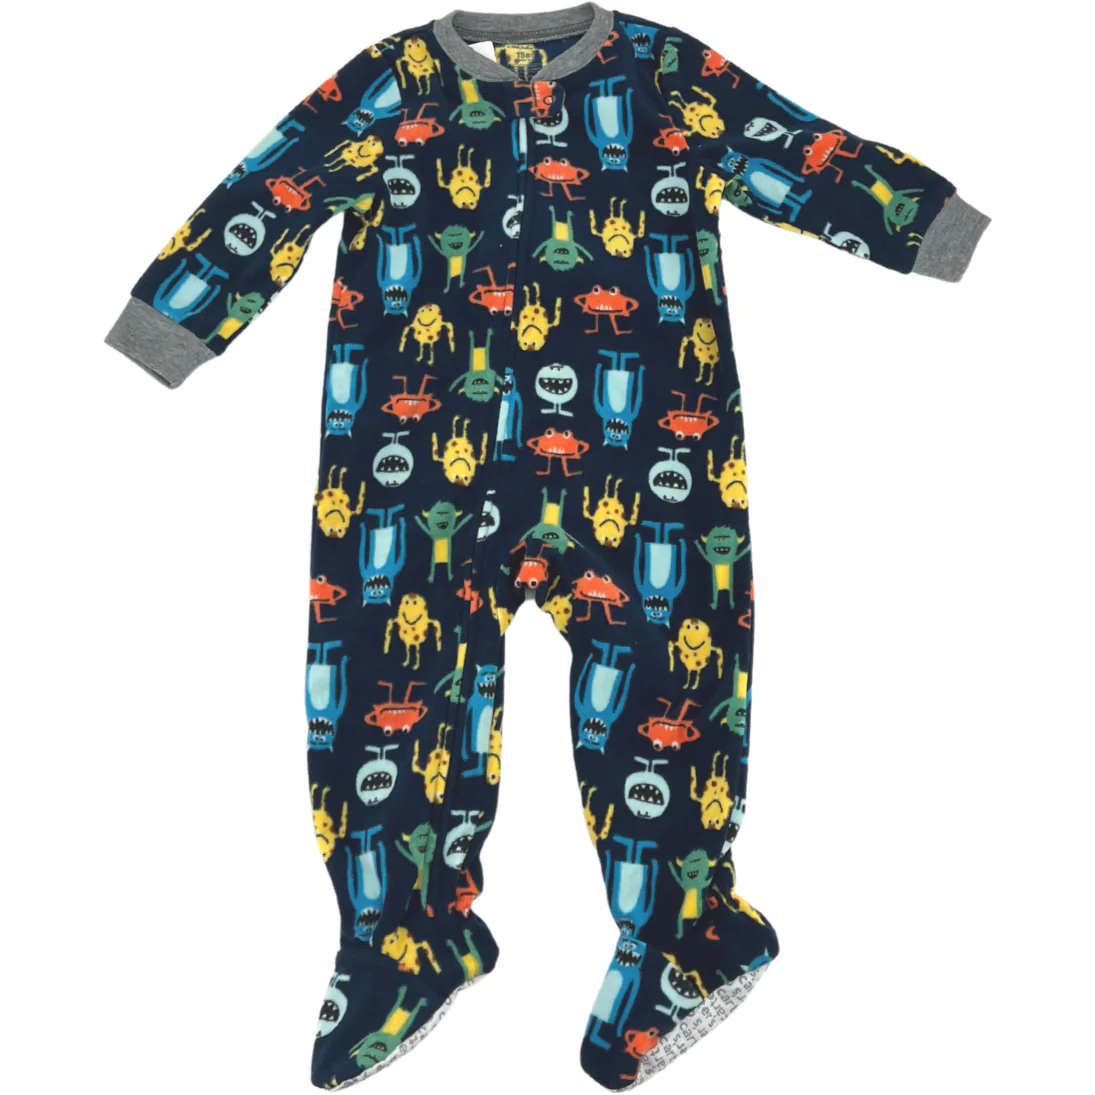 Carter's Boy's One Piece Pyjama / Zip Up Pyjama / Monster Theme / Size 18M